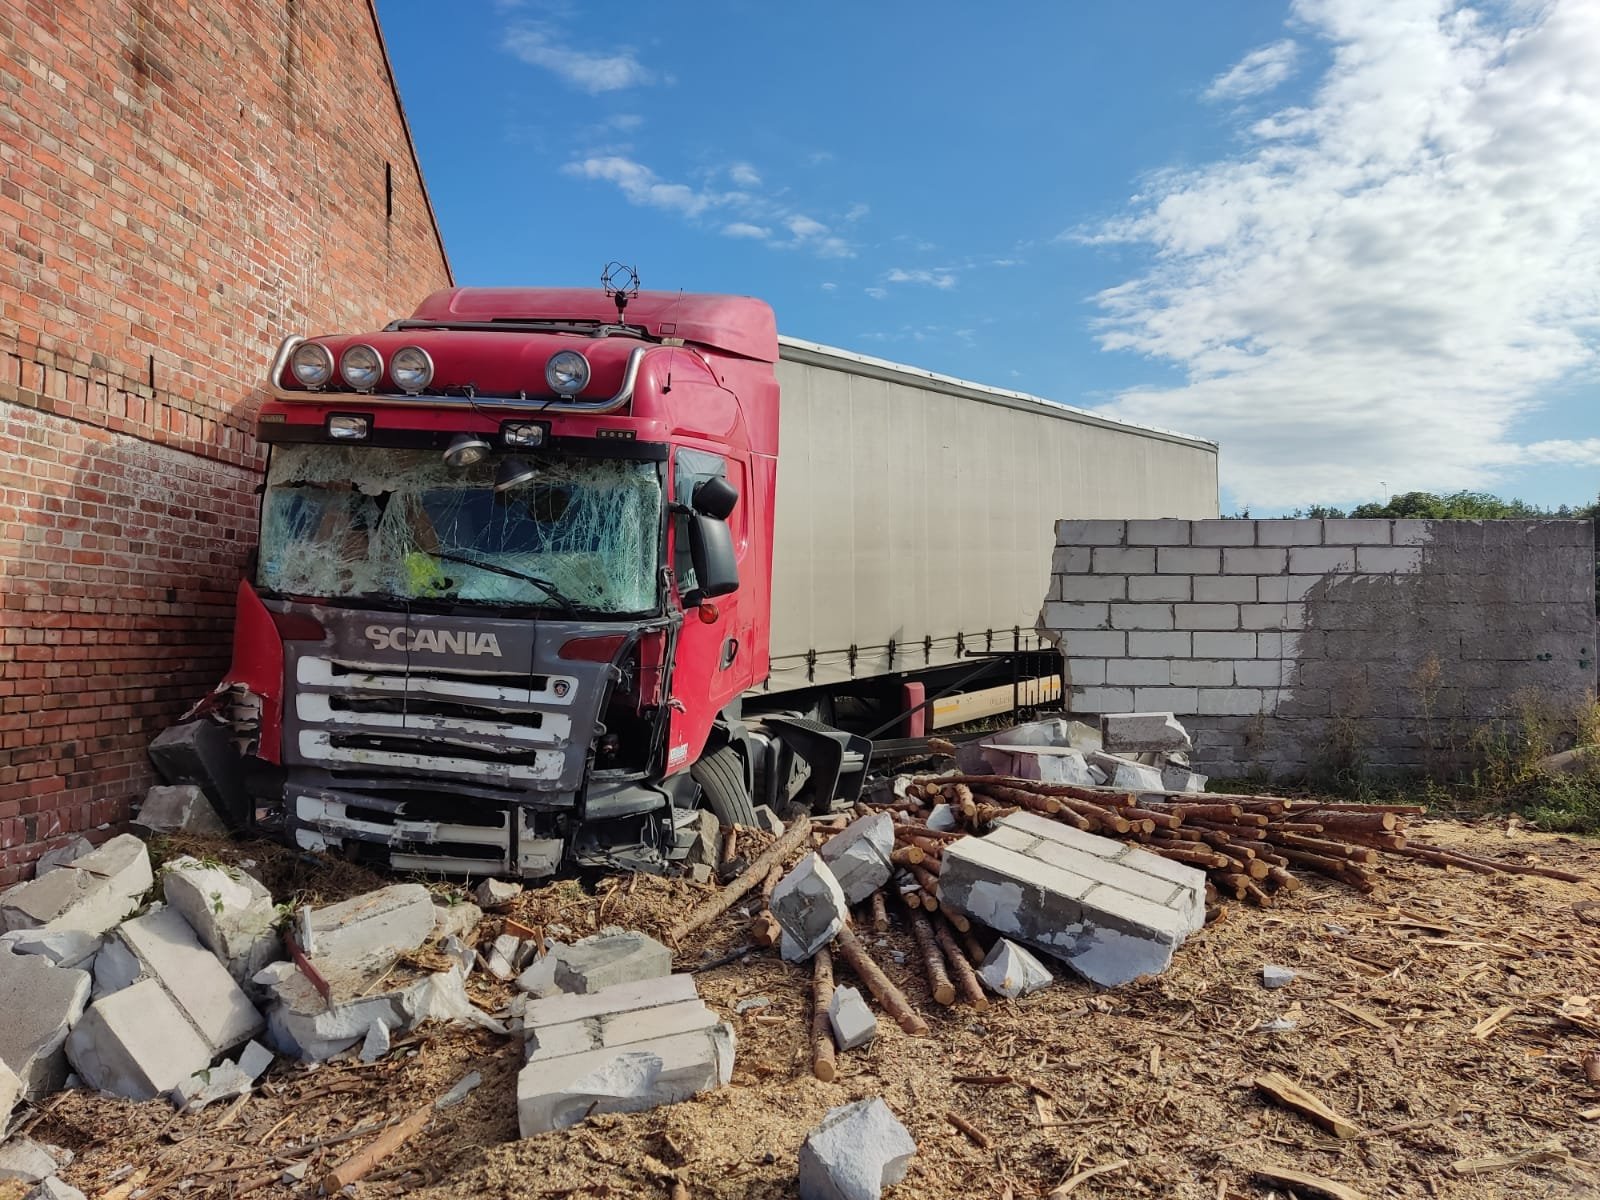 Ciężarówka wjechała w budynek piotrowo - KPP Szamotuły